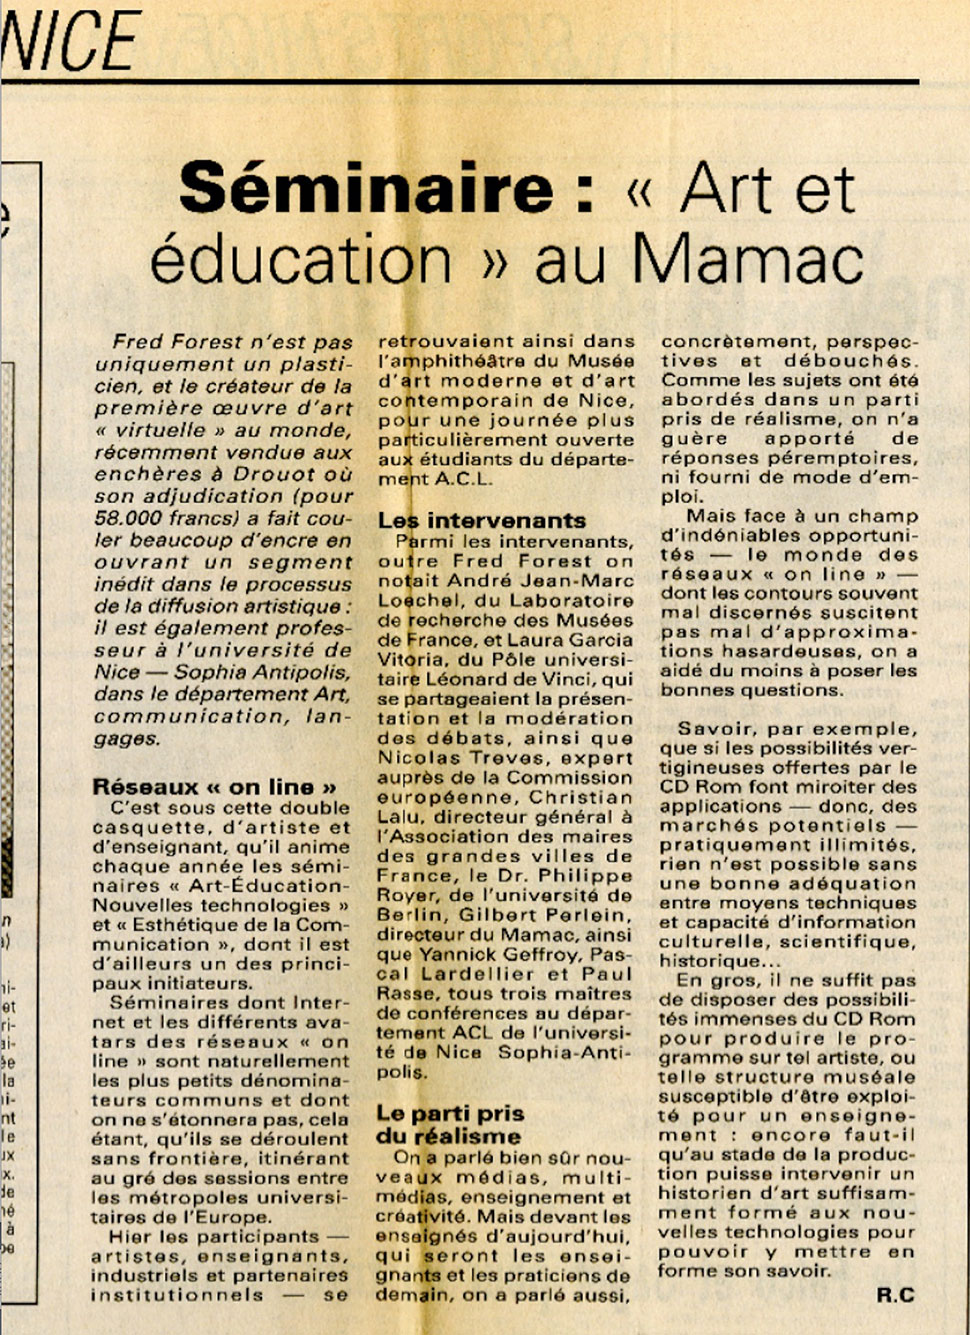 Séminaire à l'Université de Nice et au MAMAC